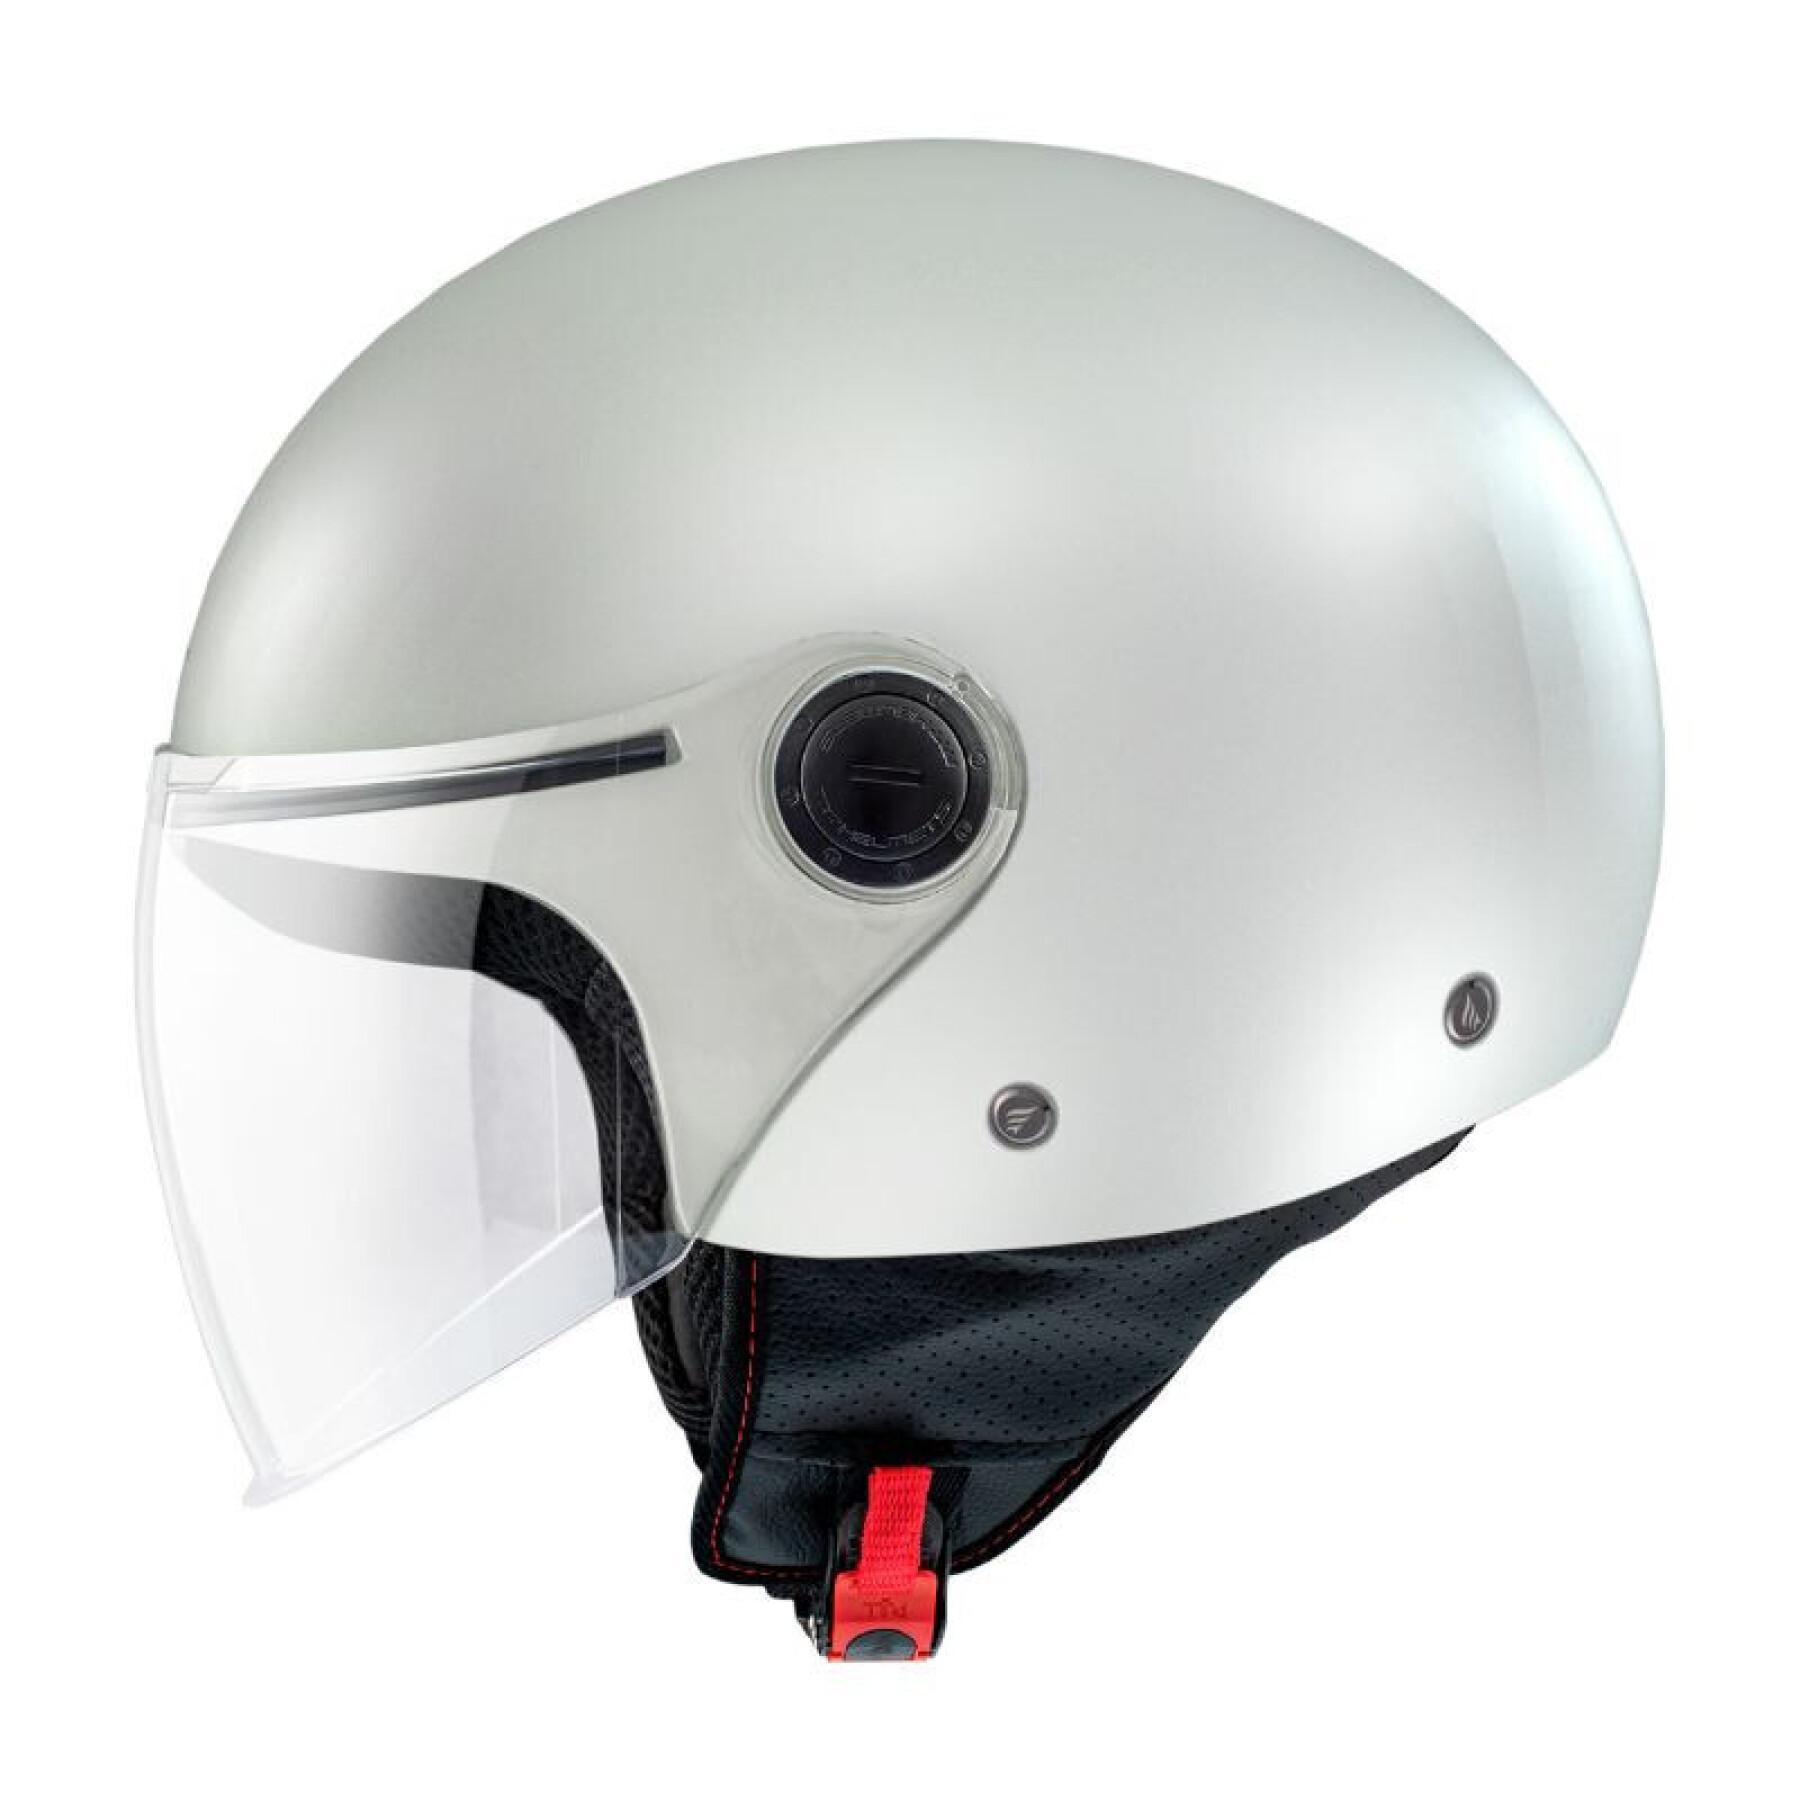 Jet motorcycle helmet MT Helmets Street (Ece 22.06)